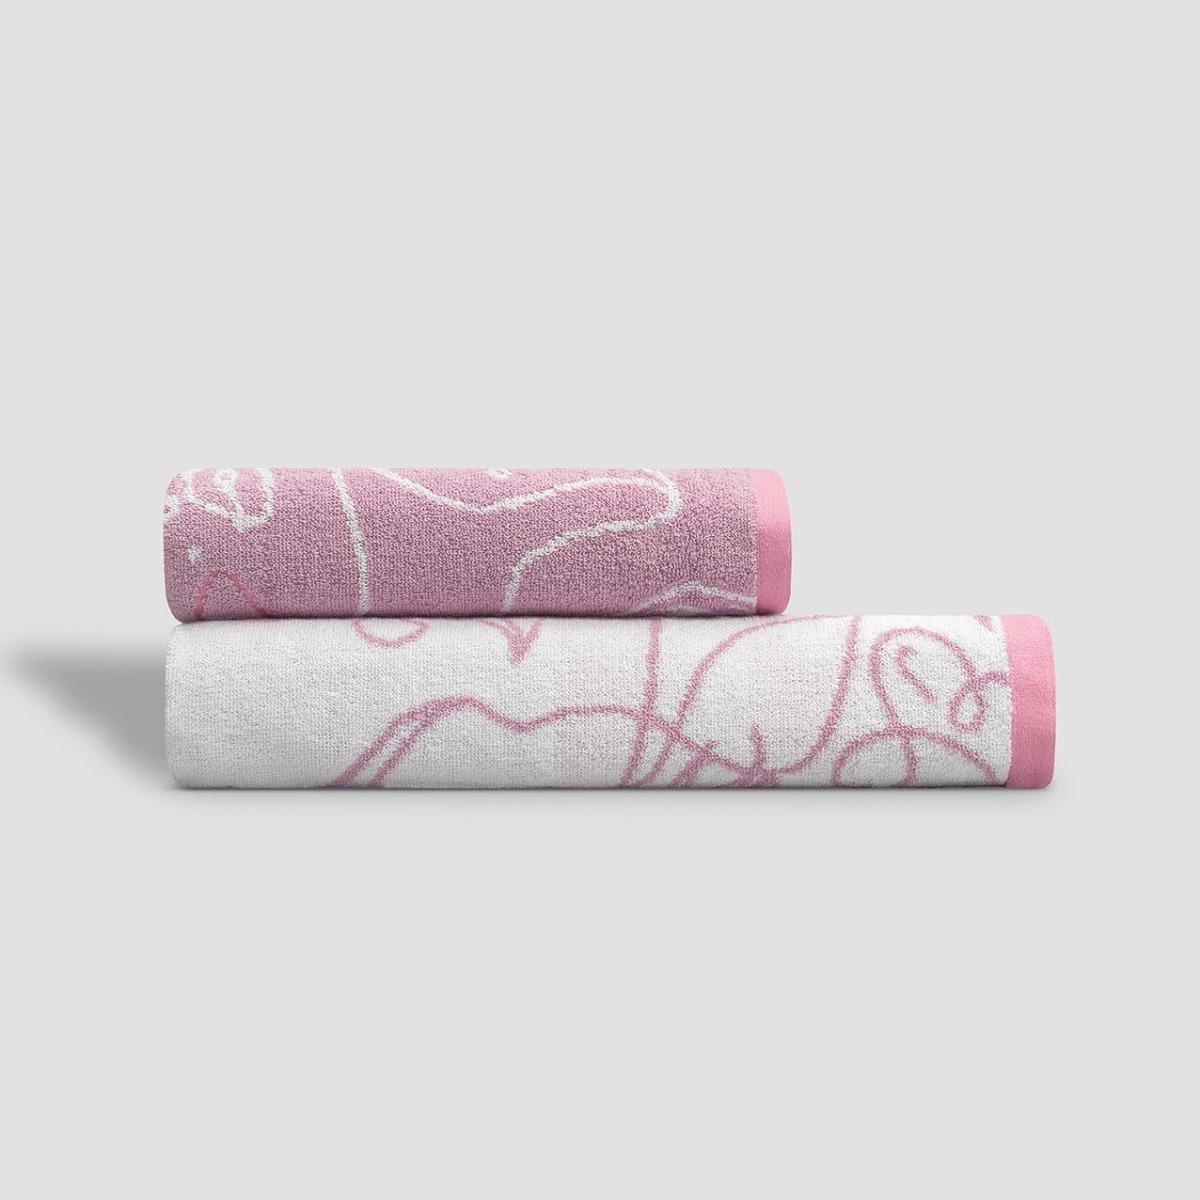 Полотенце Kids by Togas Кэрри белое с розовым 70х140 см полотенце togas джаспер бел серый 70х140